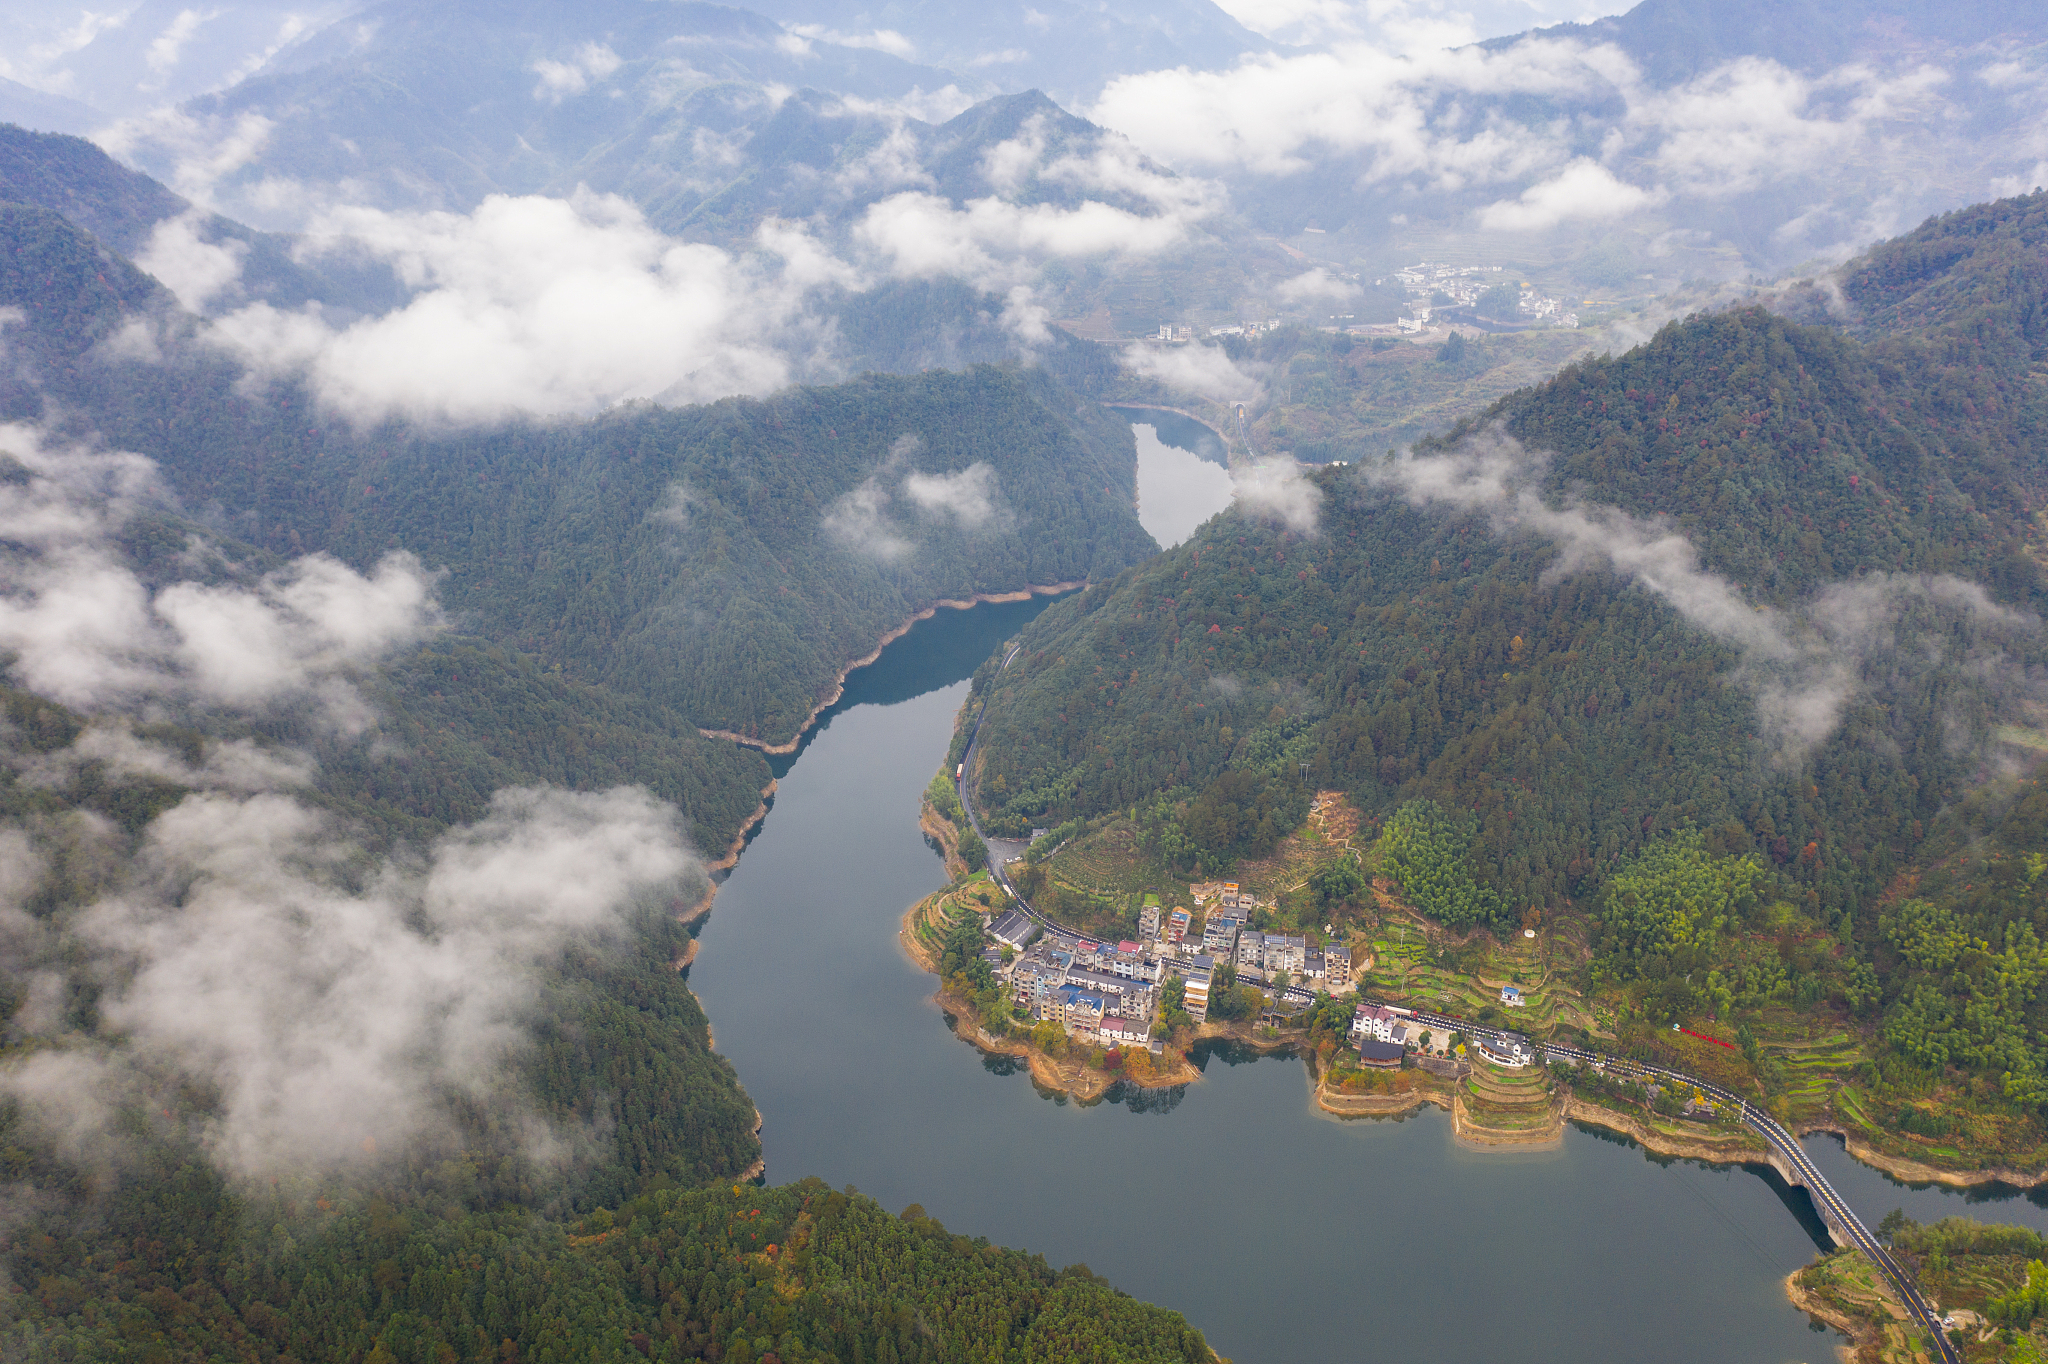 神奇的千岛湖:大自然的鬼斧神工与美丽的湖泊相映成趣